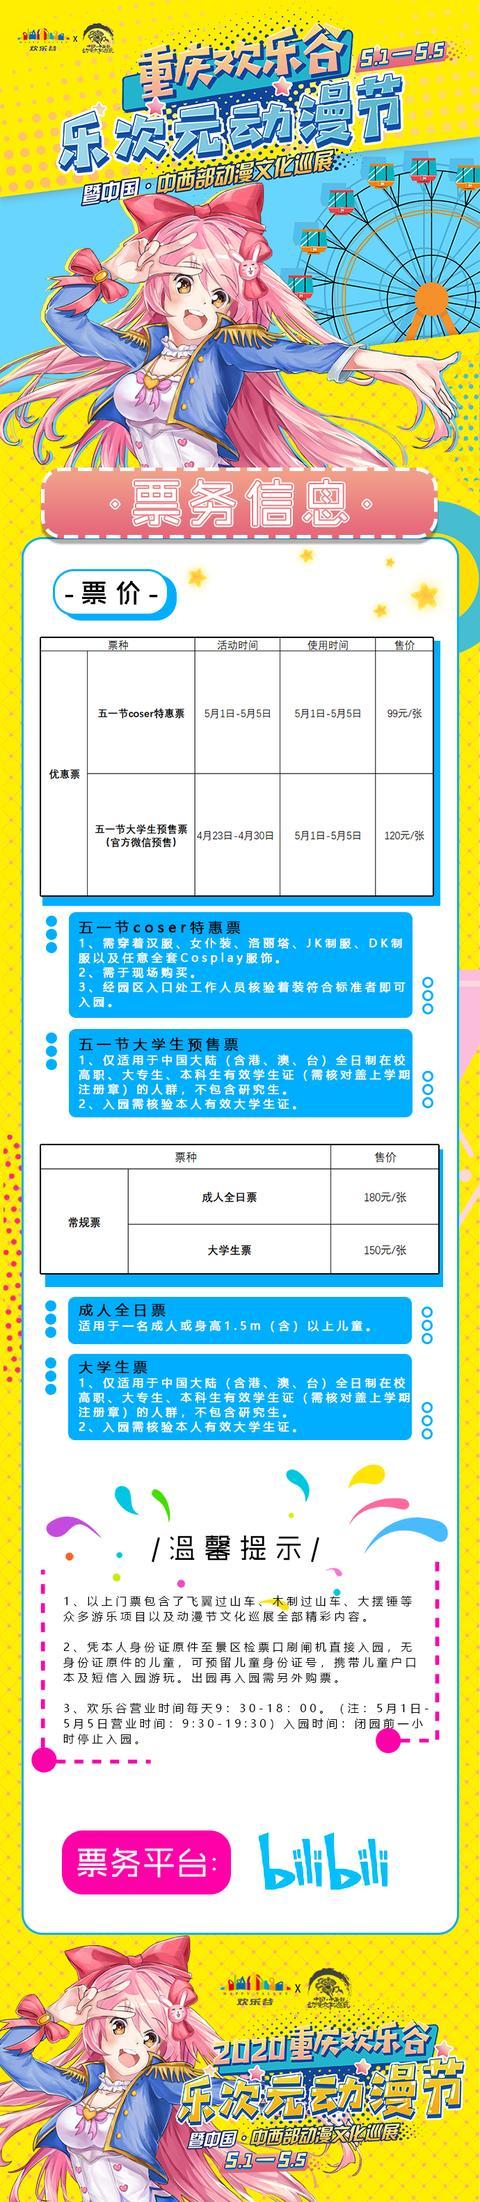 【二宣】重庆欢乐谷乐次元动漫节暨中国·中西部动漫文化巡展